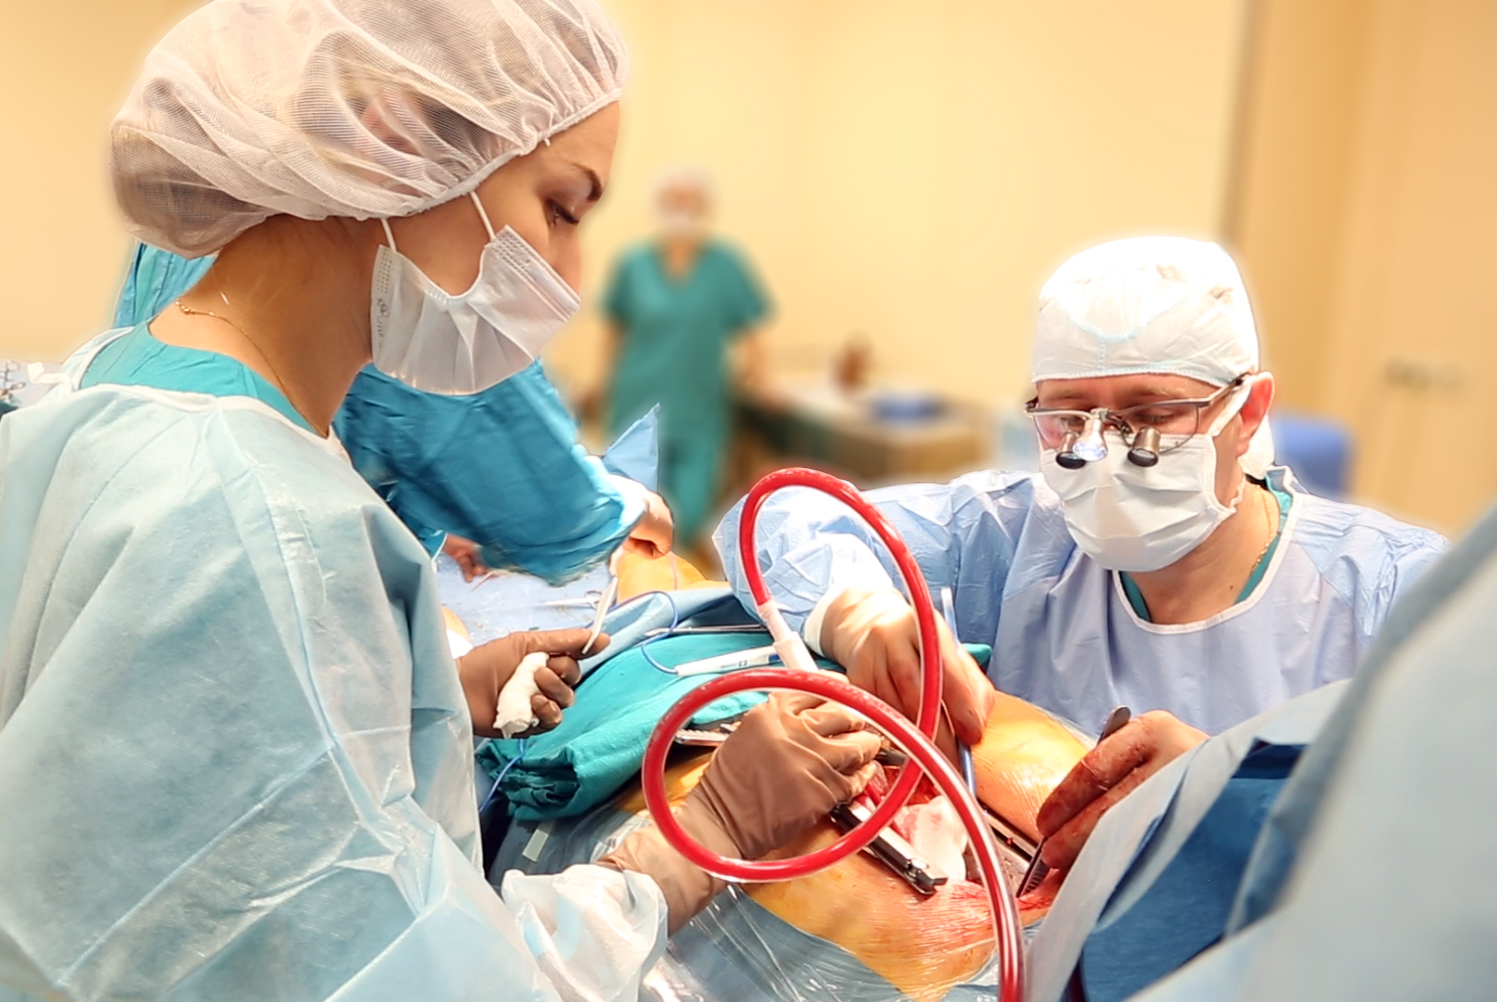 Кардиохирурги больницы Вересаева провели уникальную операцию на сердце